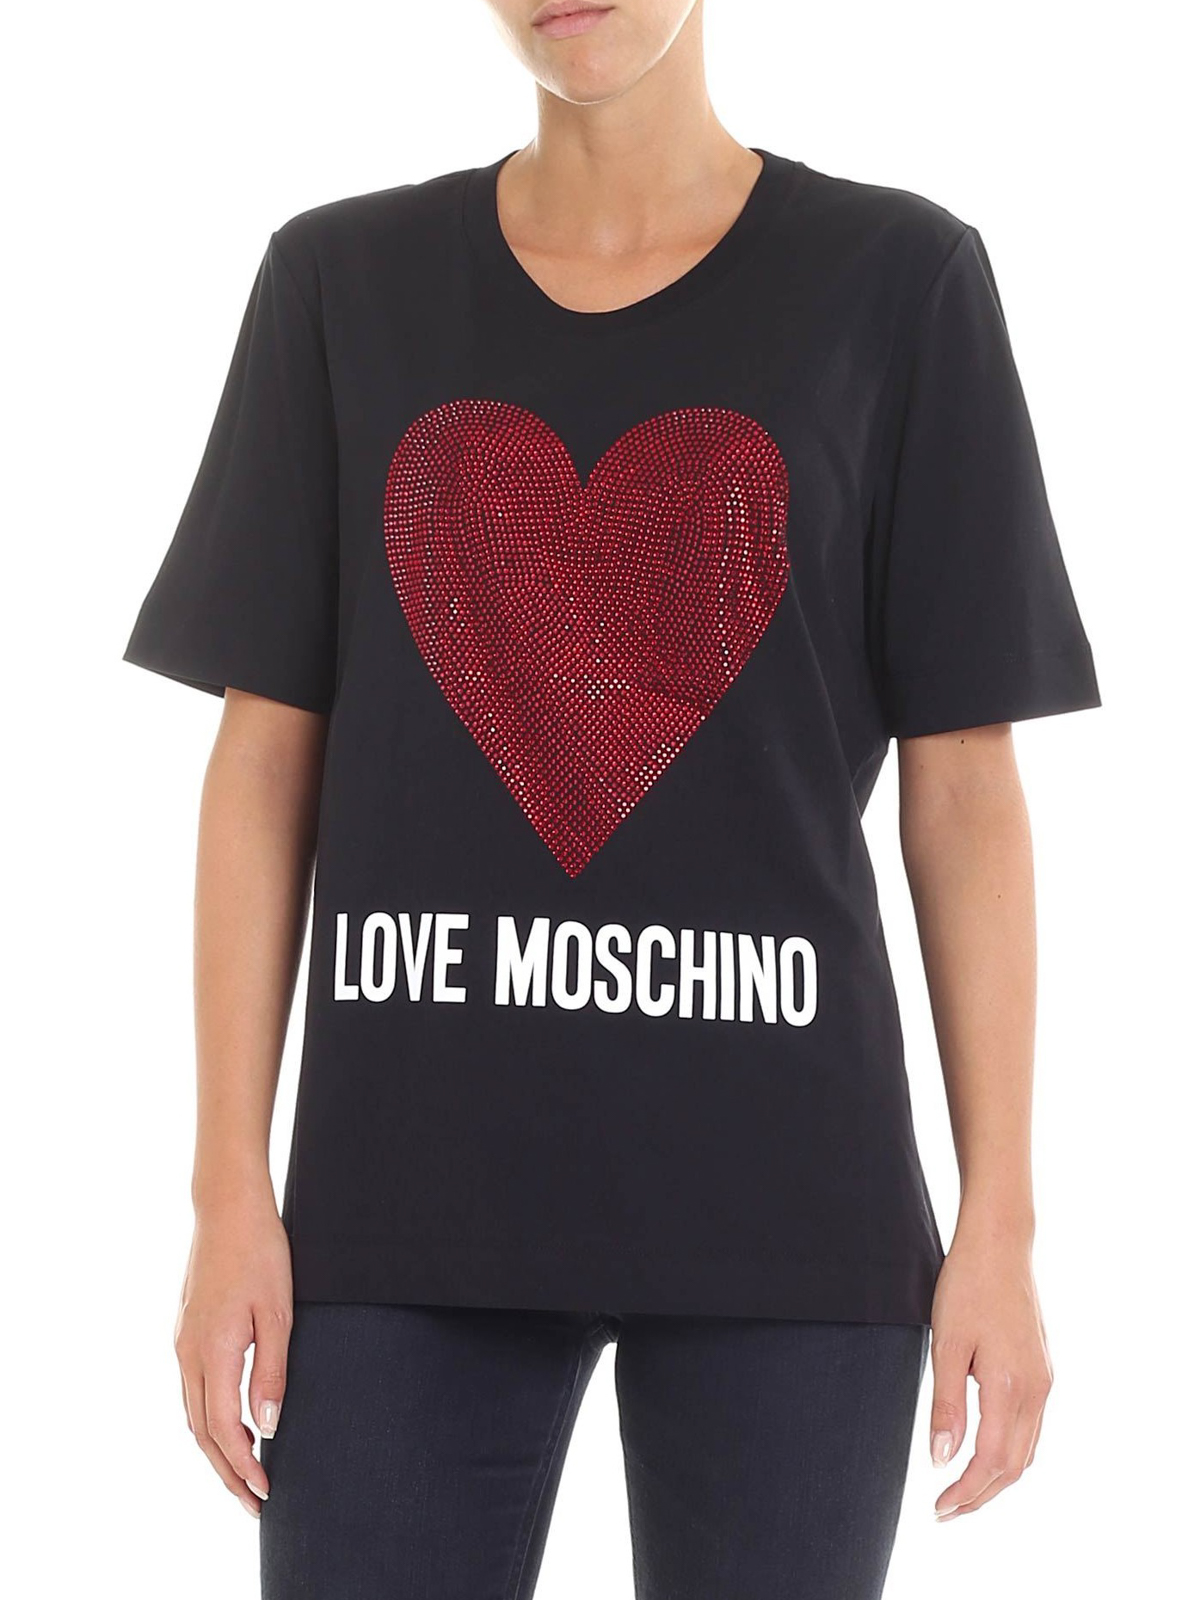 love moschino t shirt red